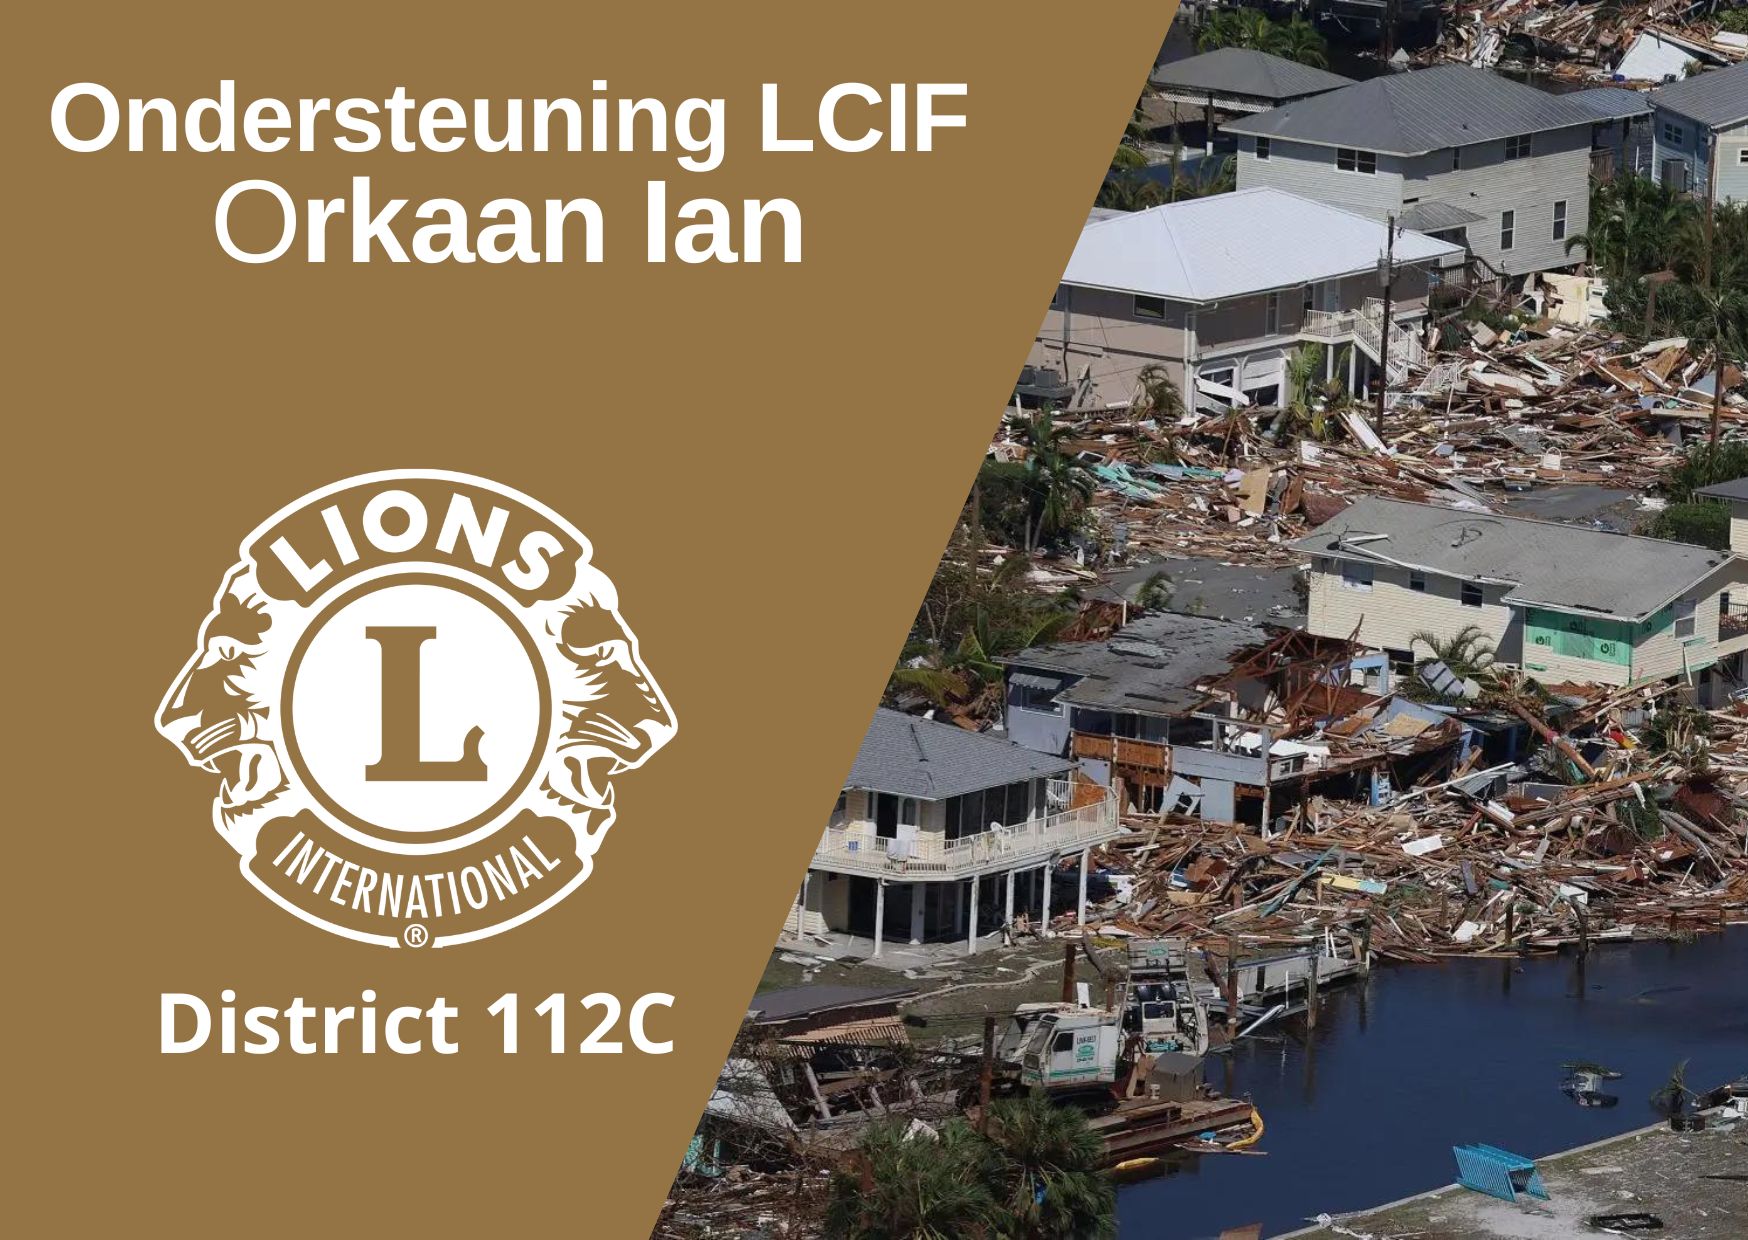 Ondersteuning Lcif Orkaan Ian